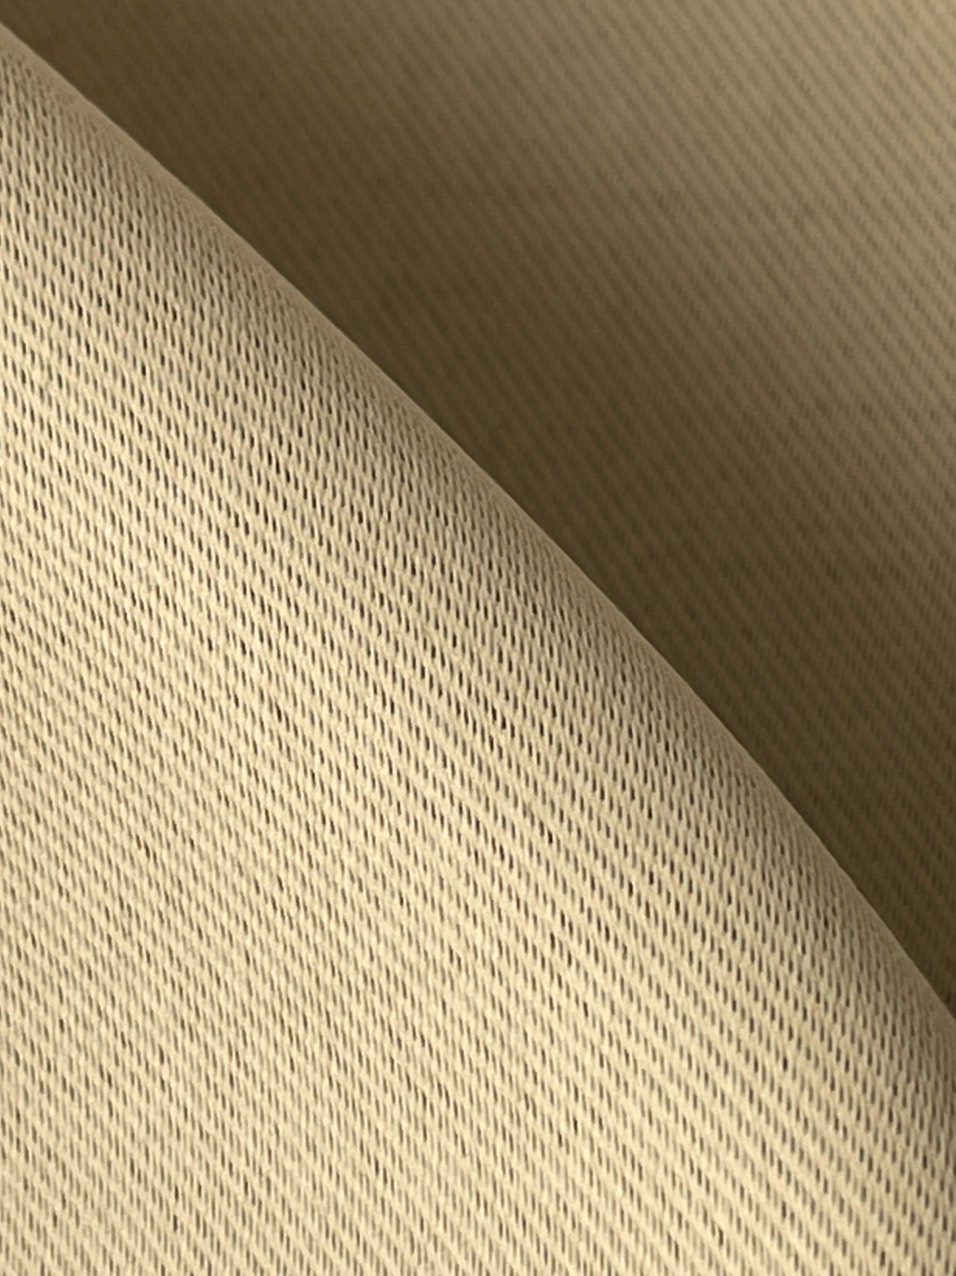 Rèm Vải Gấm Cao Cấp Cản Nắng 95% - Tặng Kèm Dây Vén Rèm ( Màu Vàng Kem)- SIZE VỪA